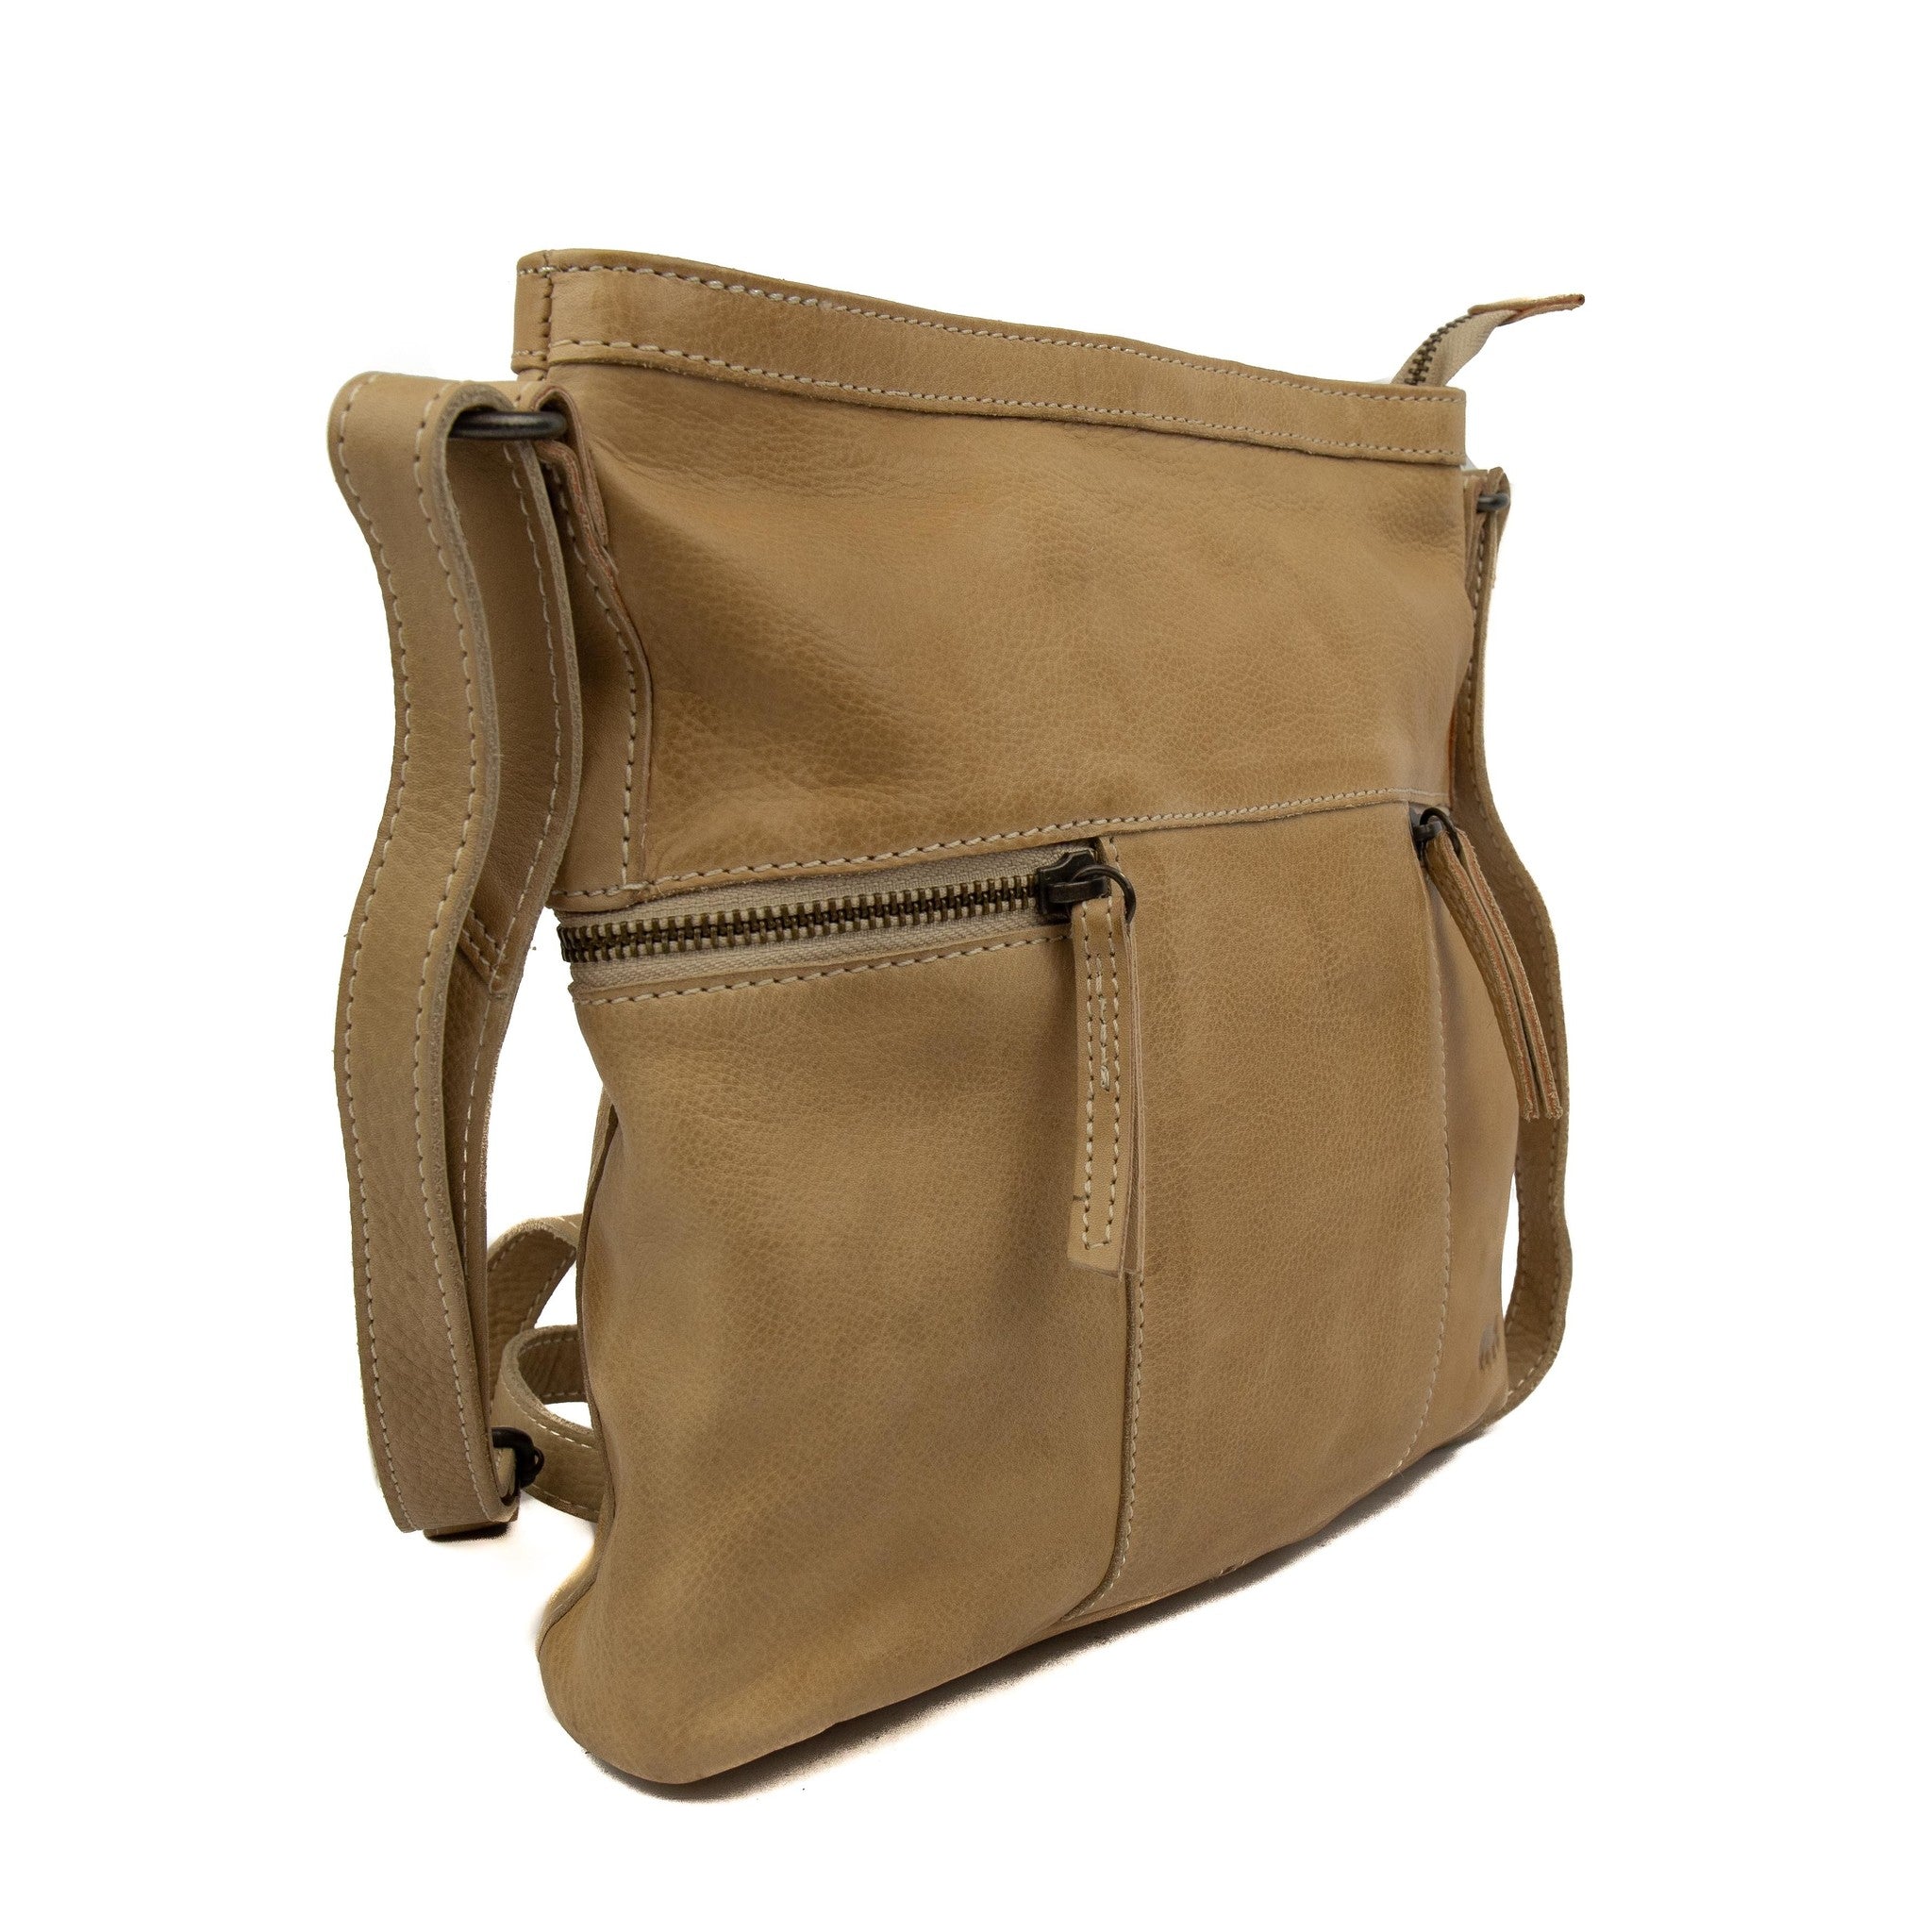 Shoulder bag 'Chessi' beige - CL 35556